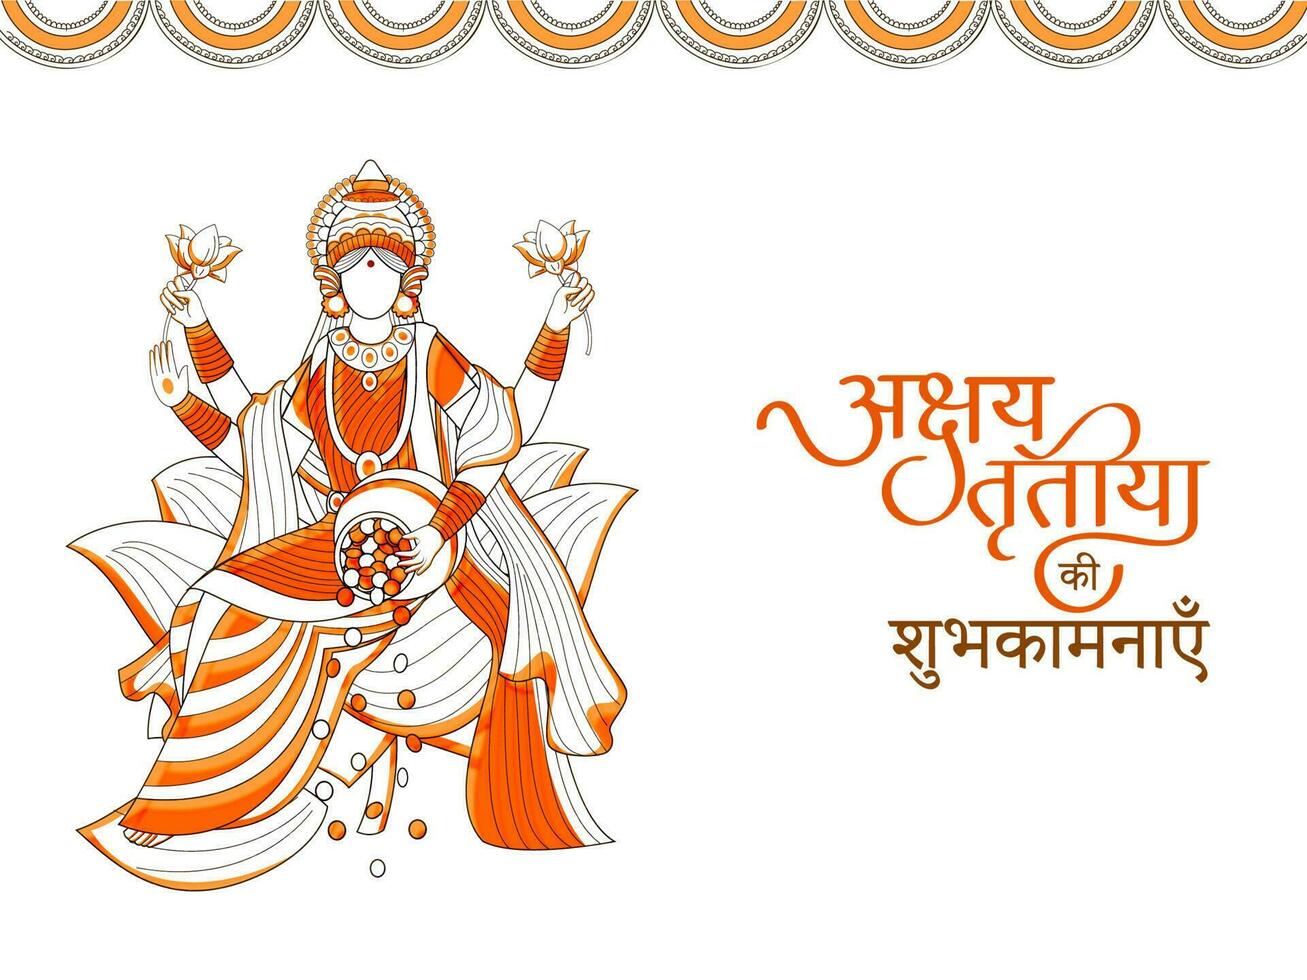 hindu festival akshaya tritiya conceito com hindi escrito texto akshaya tritiya desejos com ilustração do riqueza deusa laxmi, kalash com cheio do ouro moedas. vetor